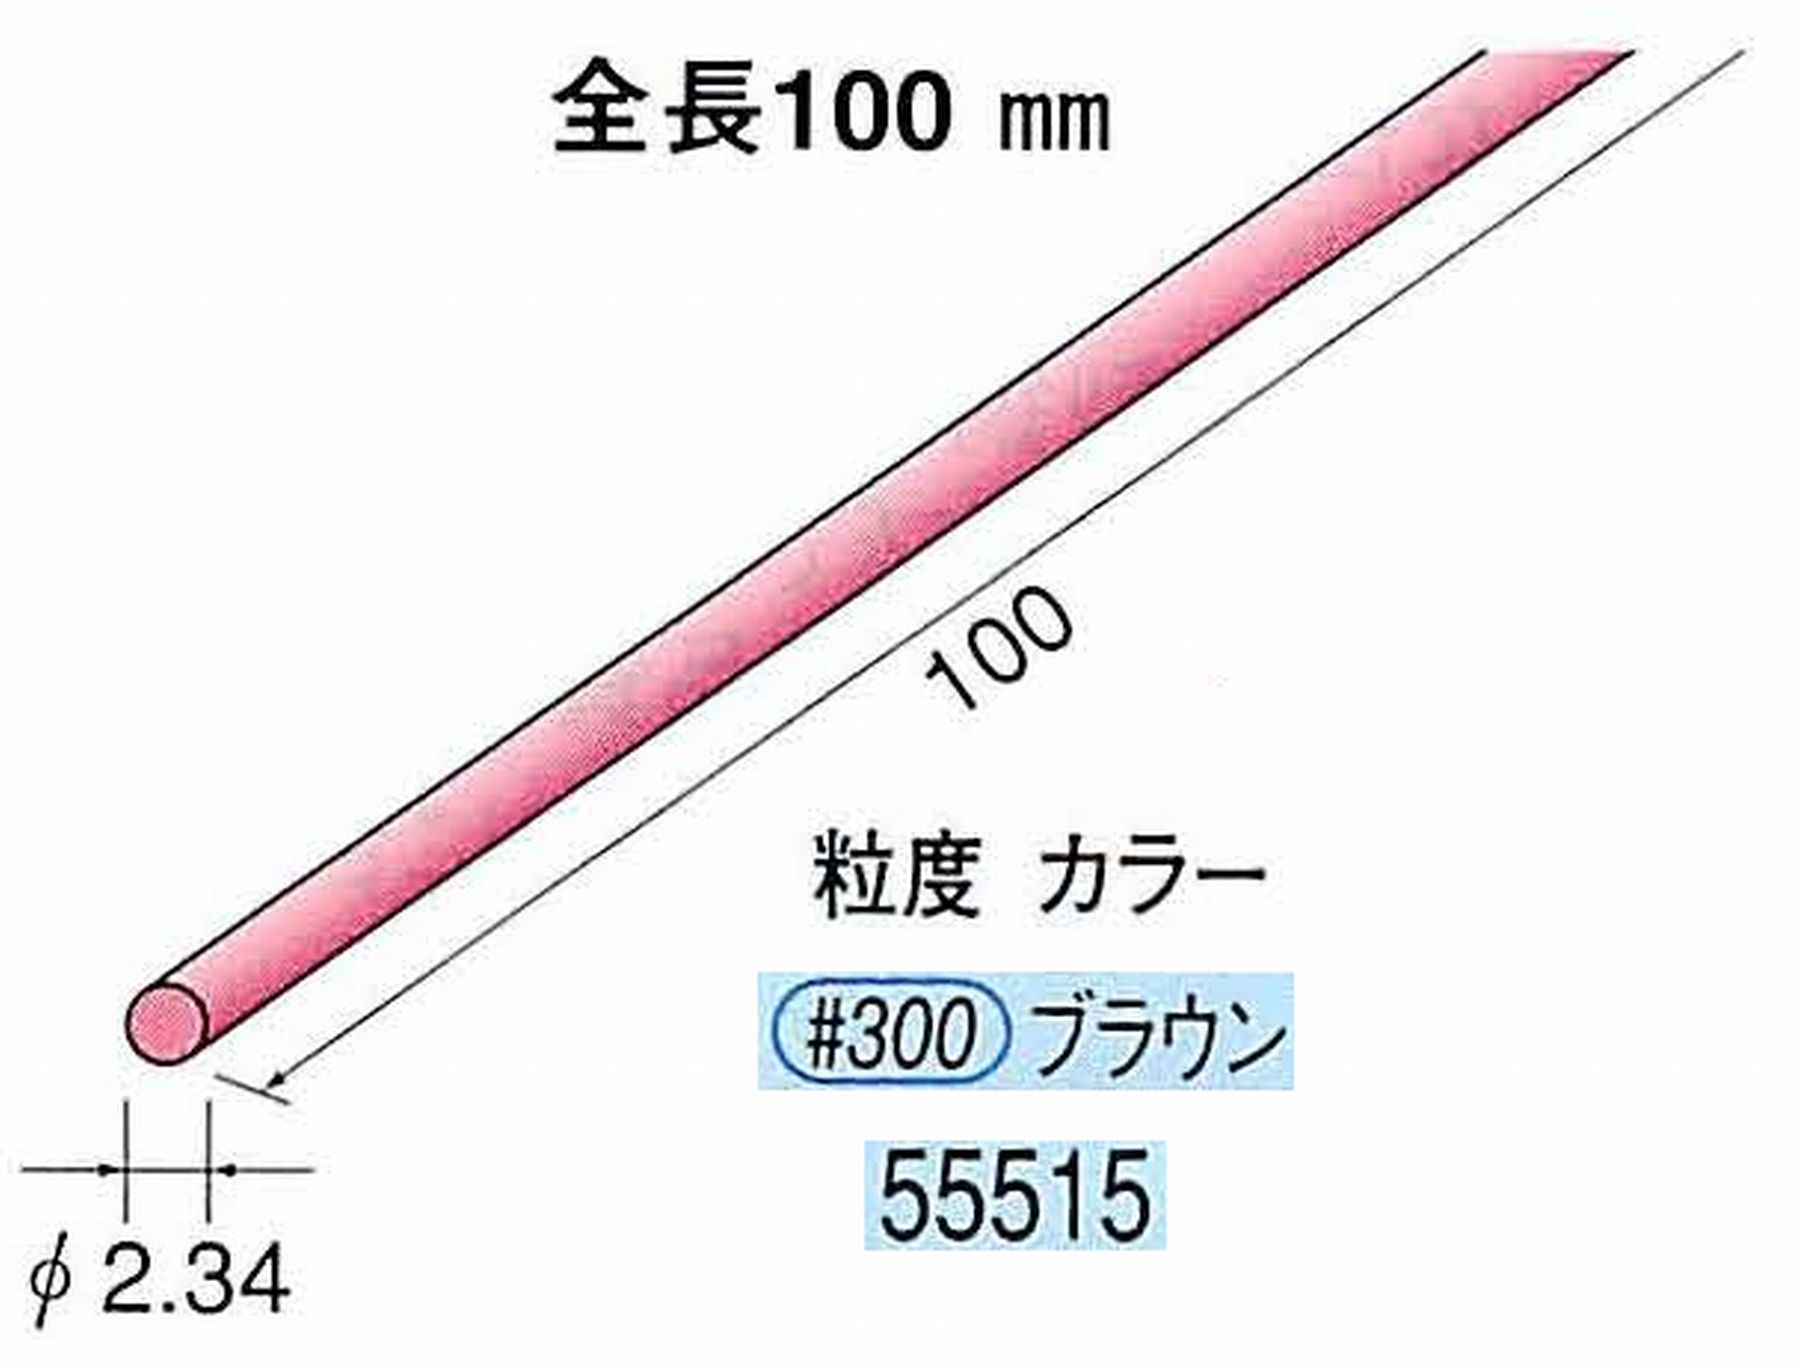 ナカニシ/NAKANISHI セラファイバー砥石 全長100mm ブラウン φ2.34mm 55515